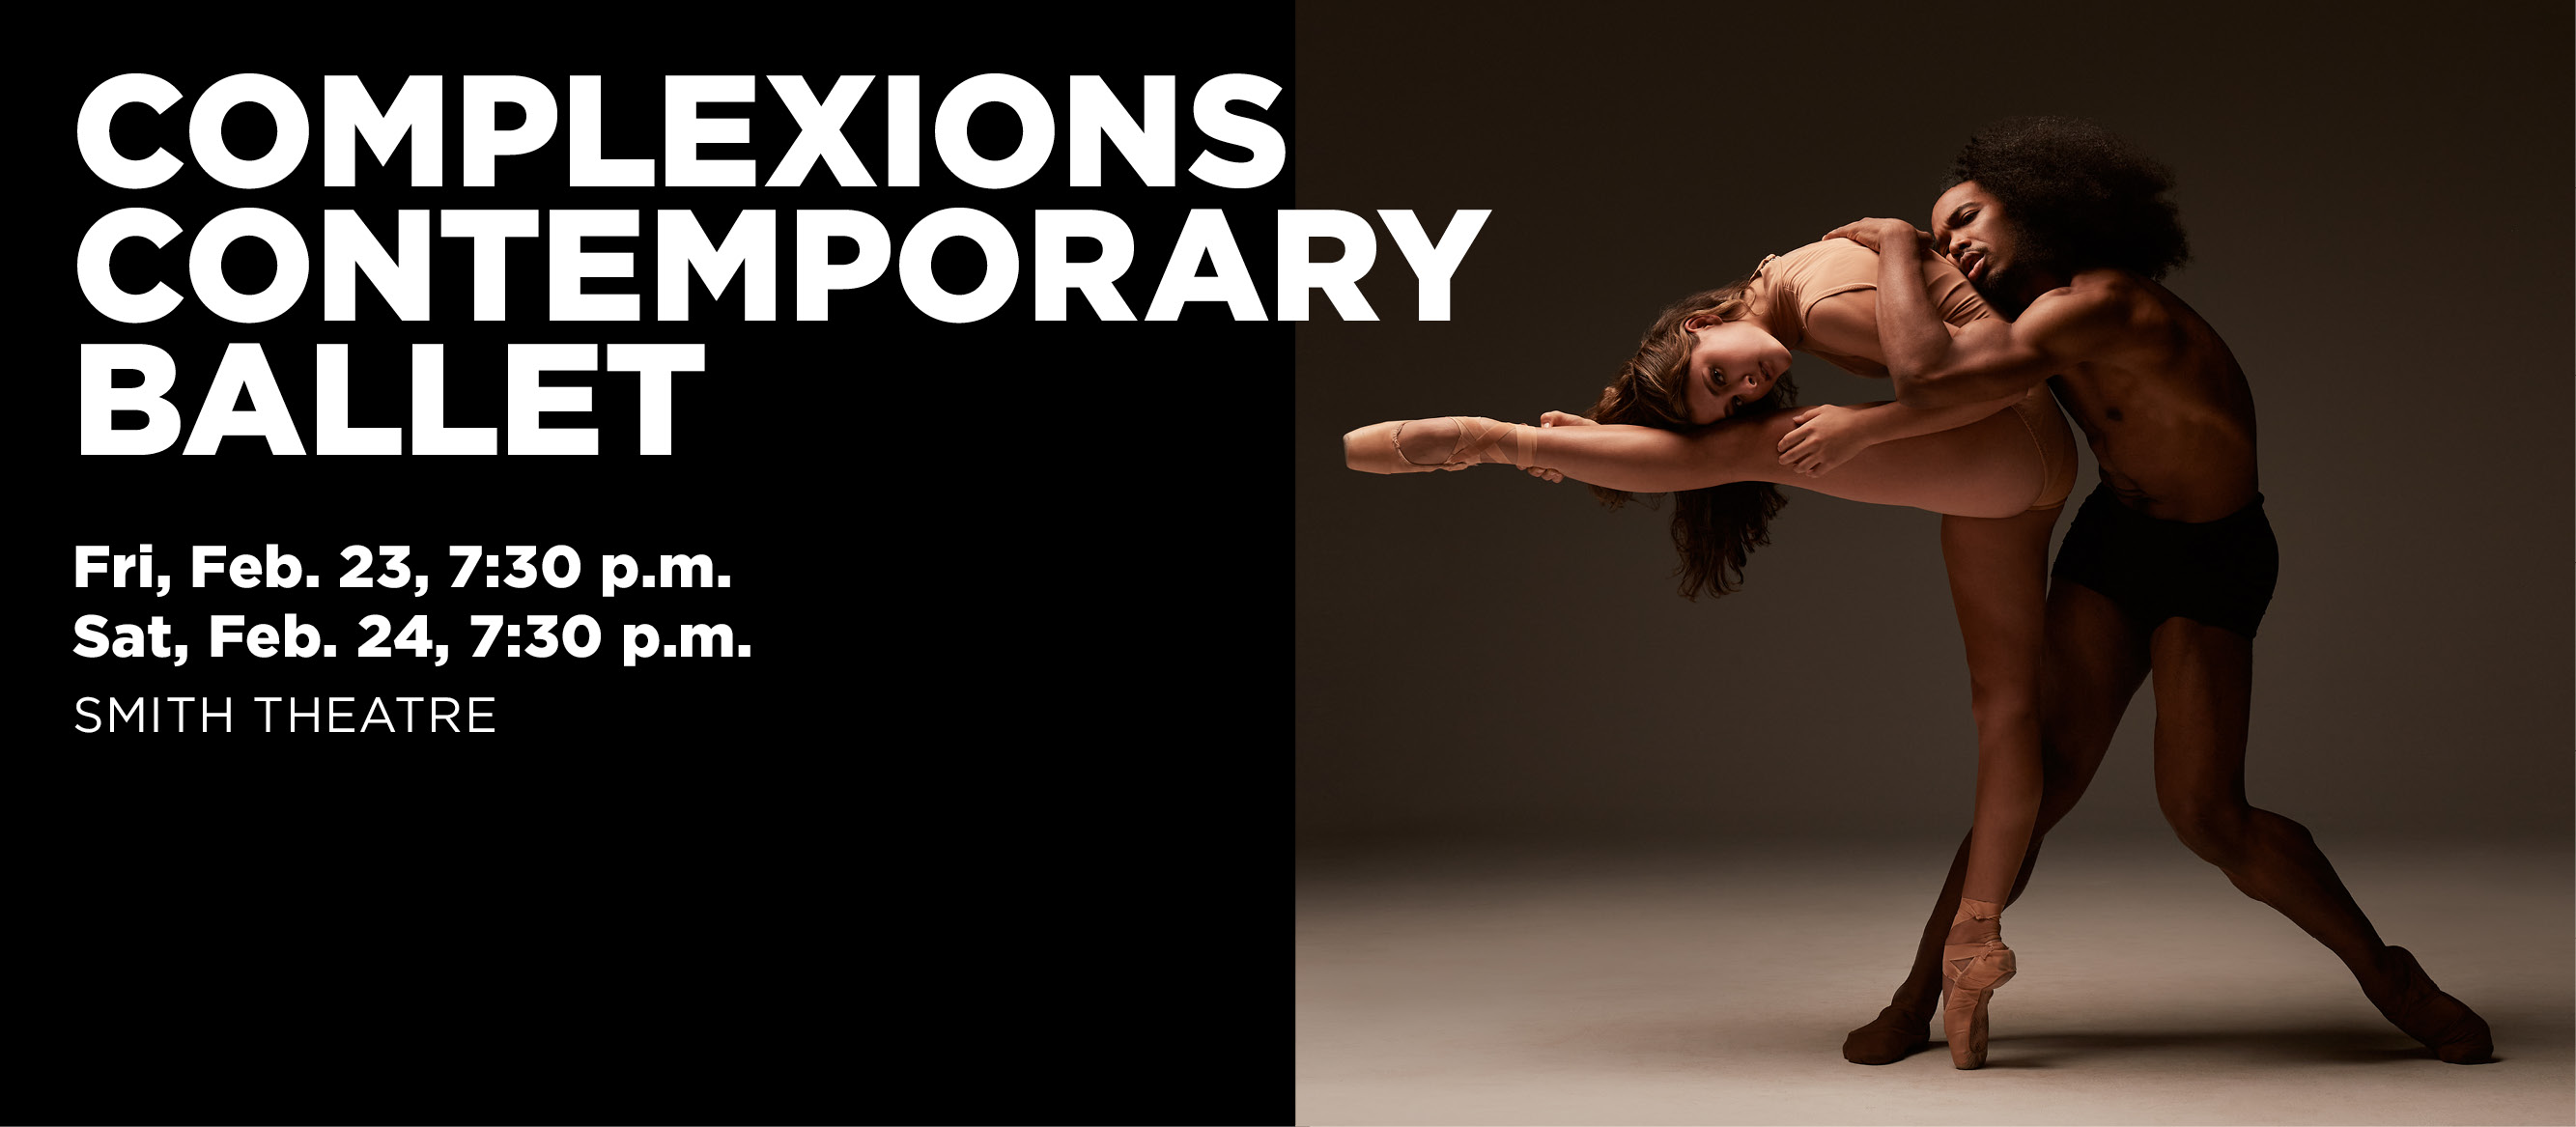 Complexions Contemporary Ballet - Fri & Sat, Feb. 23 & 24, 7:30 p.m. - Smith Theatre